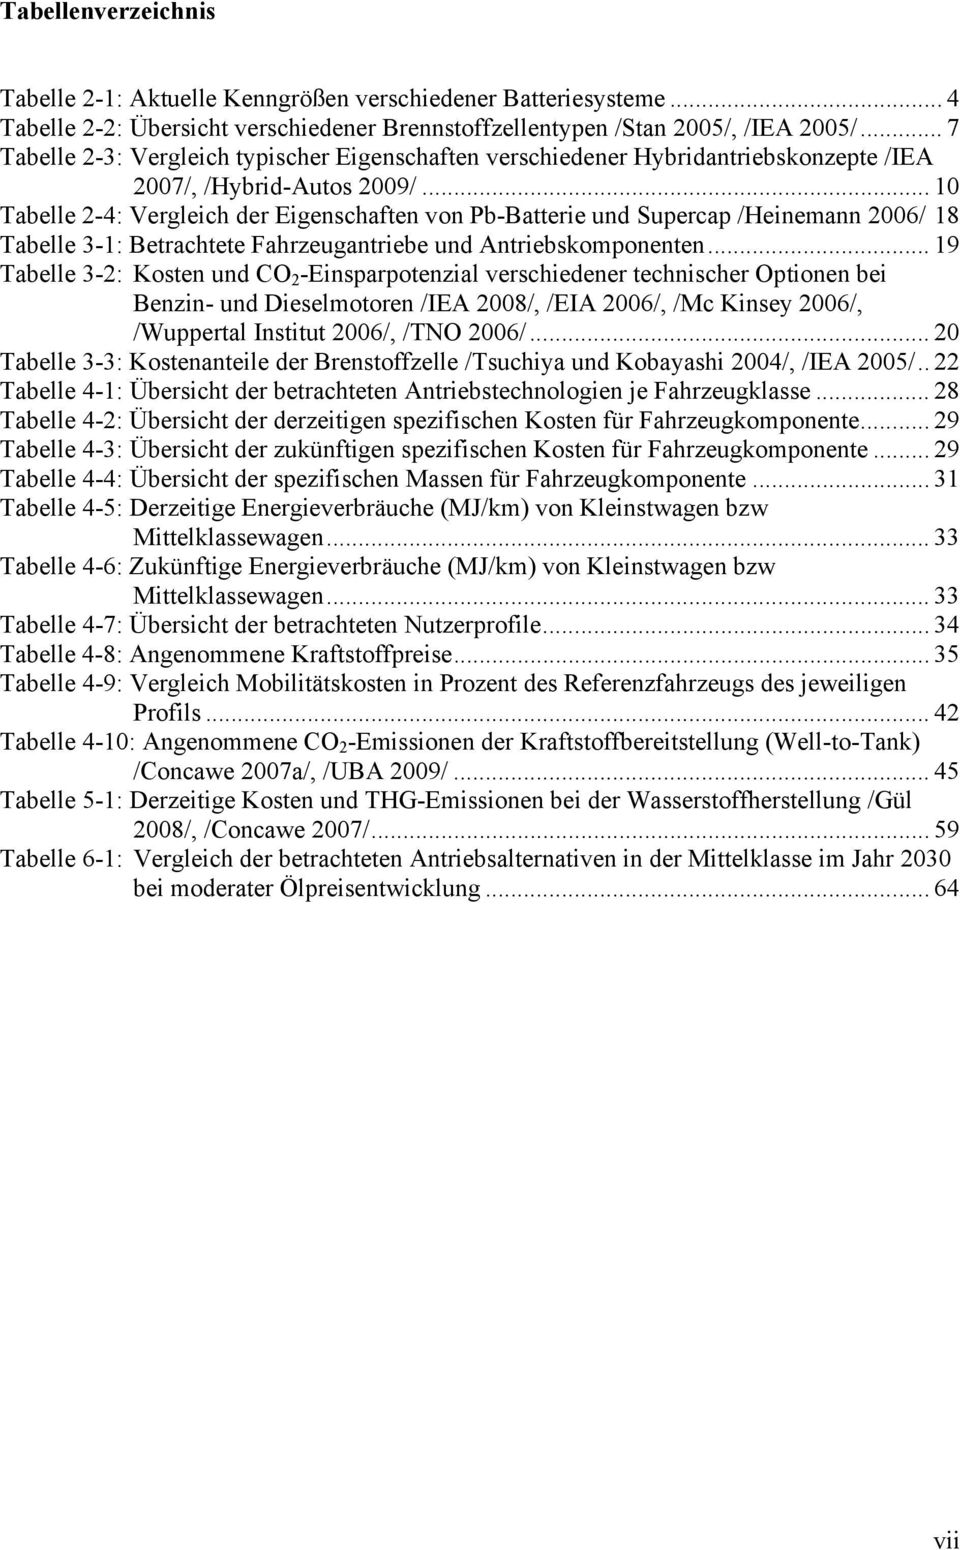 .. 1 Tabelle 2-4: Vergleich der Eigenschaften von Pb-Batterie und Supercap /Heinemann 26/ 18 Tabelle 3-1: Betrachtete Fahrzeugantriebe und Antriebskomponenten.